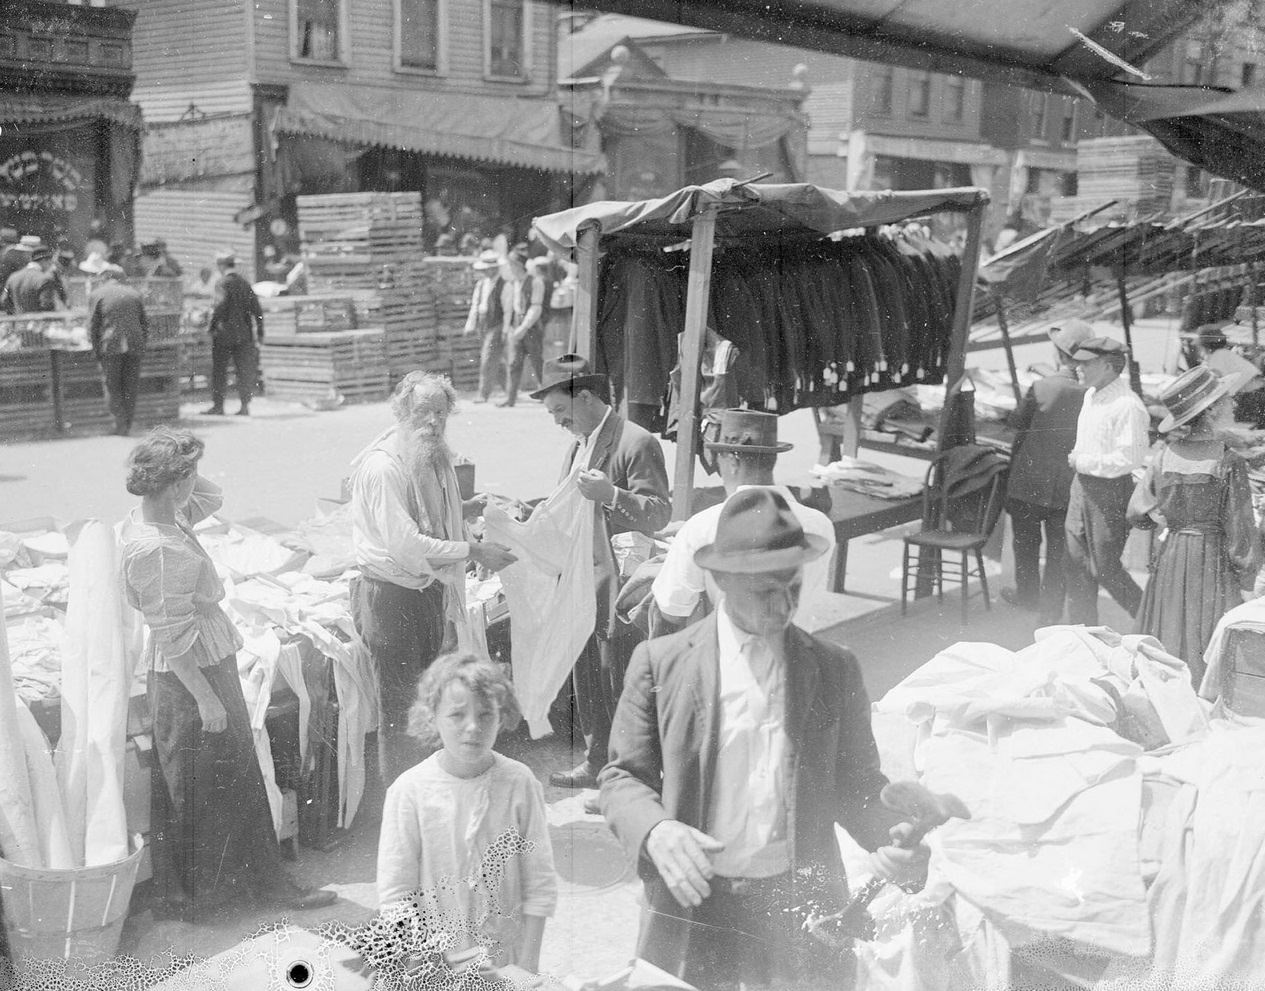 Sunday market near Maxwell Street, Chicago, Illinois, 1917.